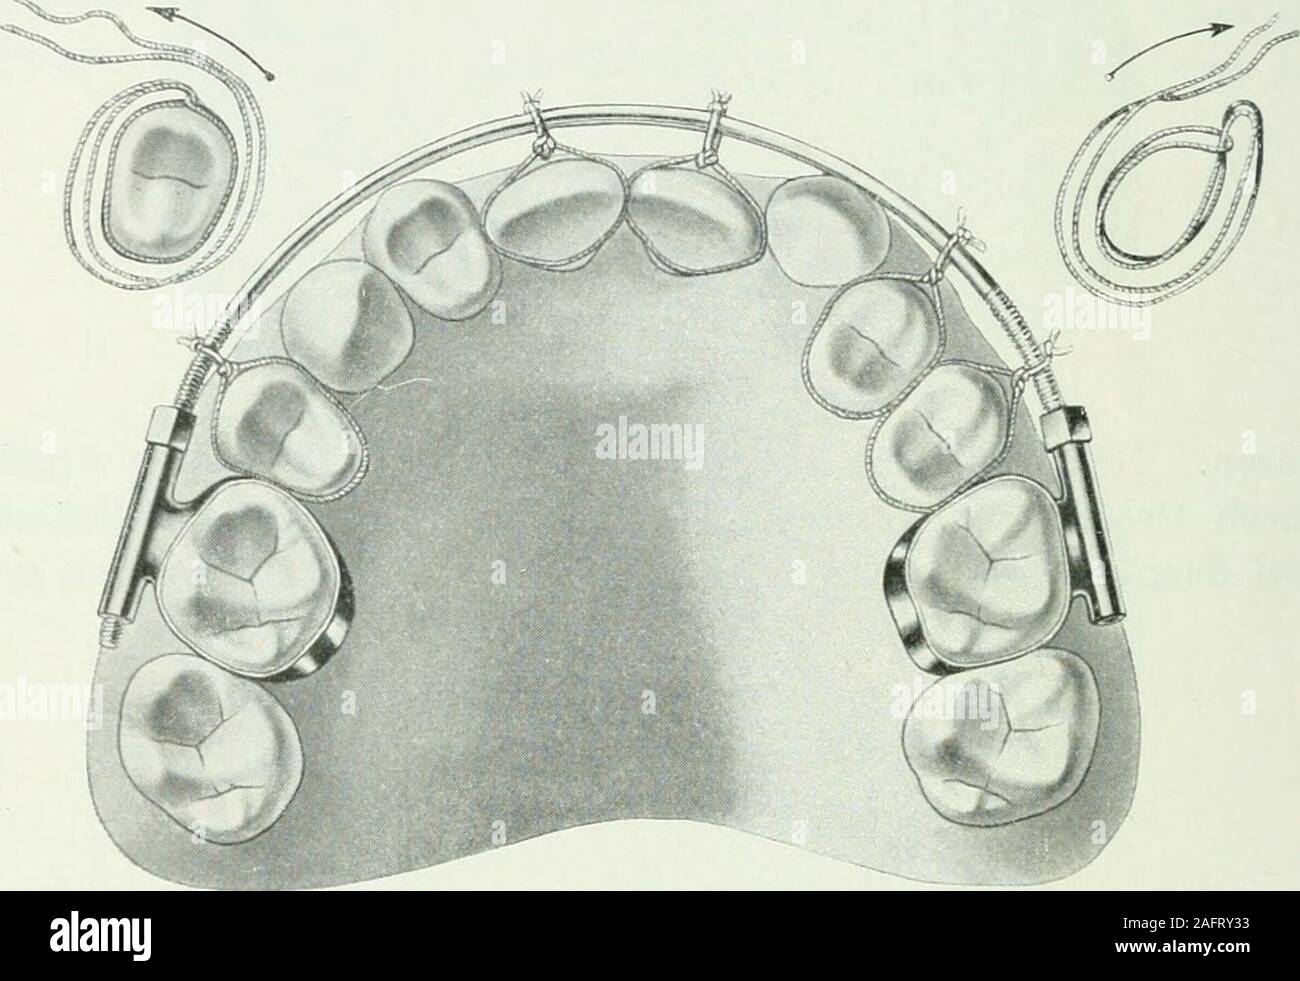 . Lehrbuch der orthodontie fur studierende und zahnartze enschluss mit der Geschichte der orthodontie. Fig. 219. schoben durch auswärts angebrachte Schrauben, die in der kleinenKanülen Eckzahnbänder ihren Halt fanden. Durch den einenan Schneidezähnen entlang gehenden Verbindungsbügel derEckzähne waren die Zähne zwischenliegenden gezwungen, un 15* 228 II. Therapie der Anomalien. der Vorwärtsbewegung teilzunehmen. 218 Abbildung zeigt denimten Apparat. Wie die Prämolaren durch einen Dehnungsapparat einfach-ster forma nach außen in den normalen Zahnbogen hineinge-drängt werden, illustriert die Abbi Foto Stock